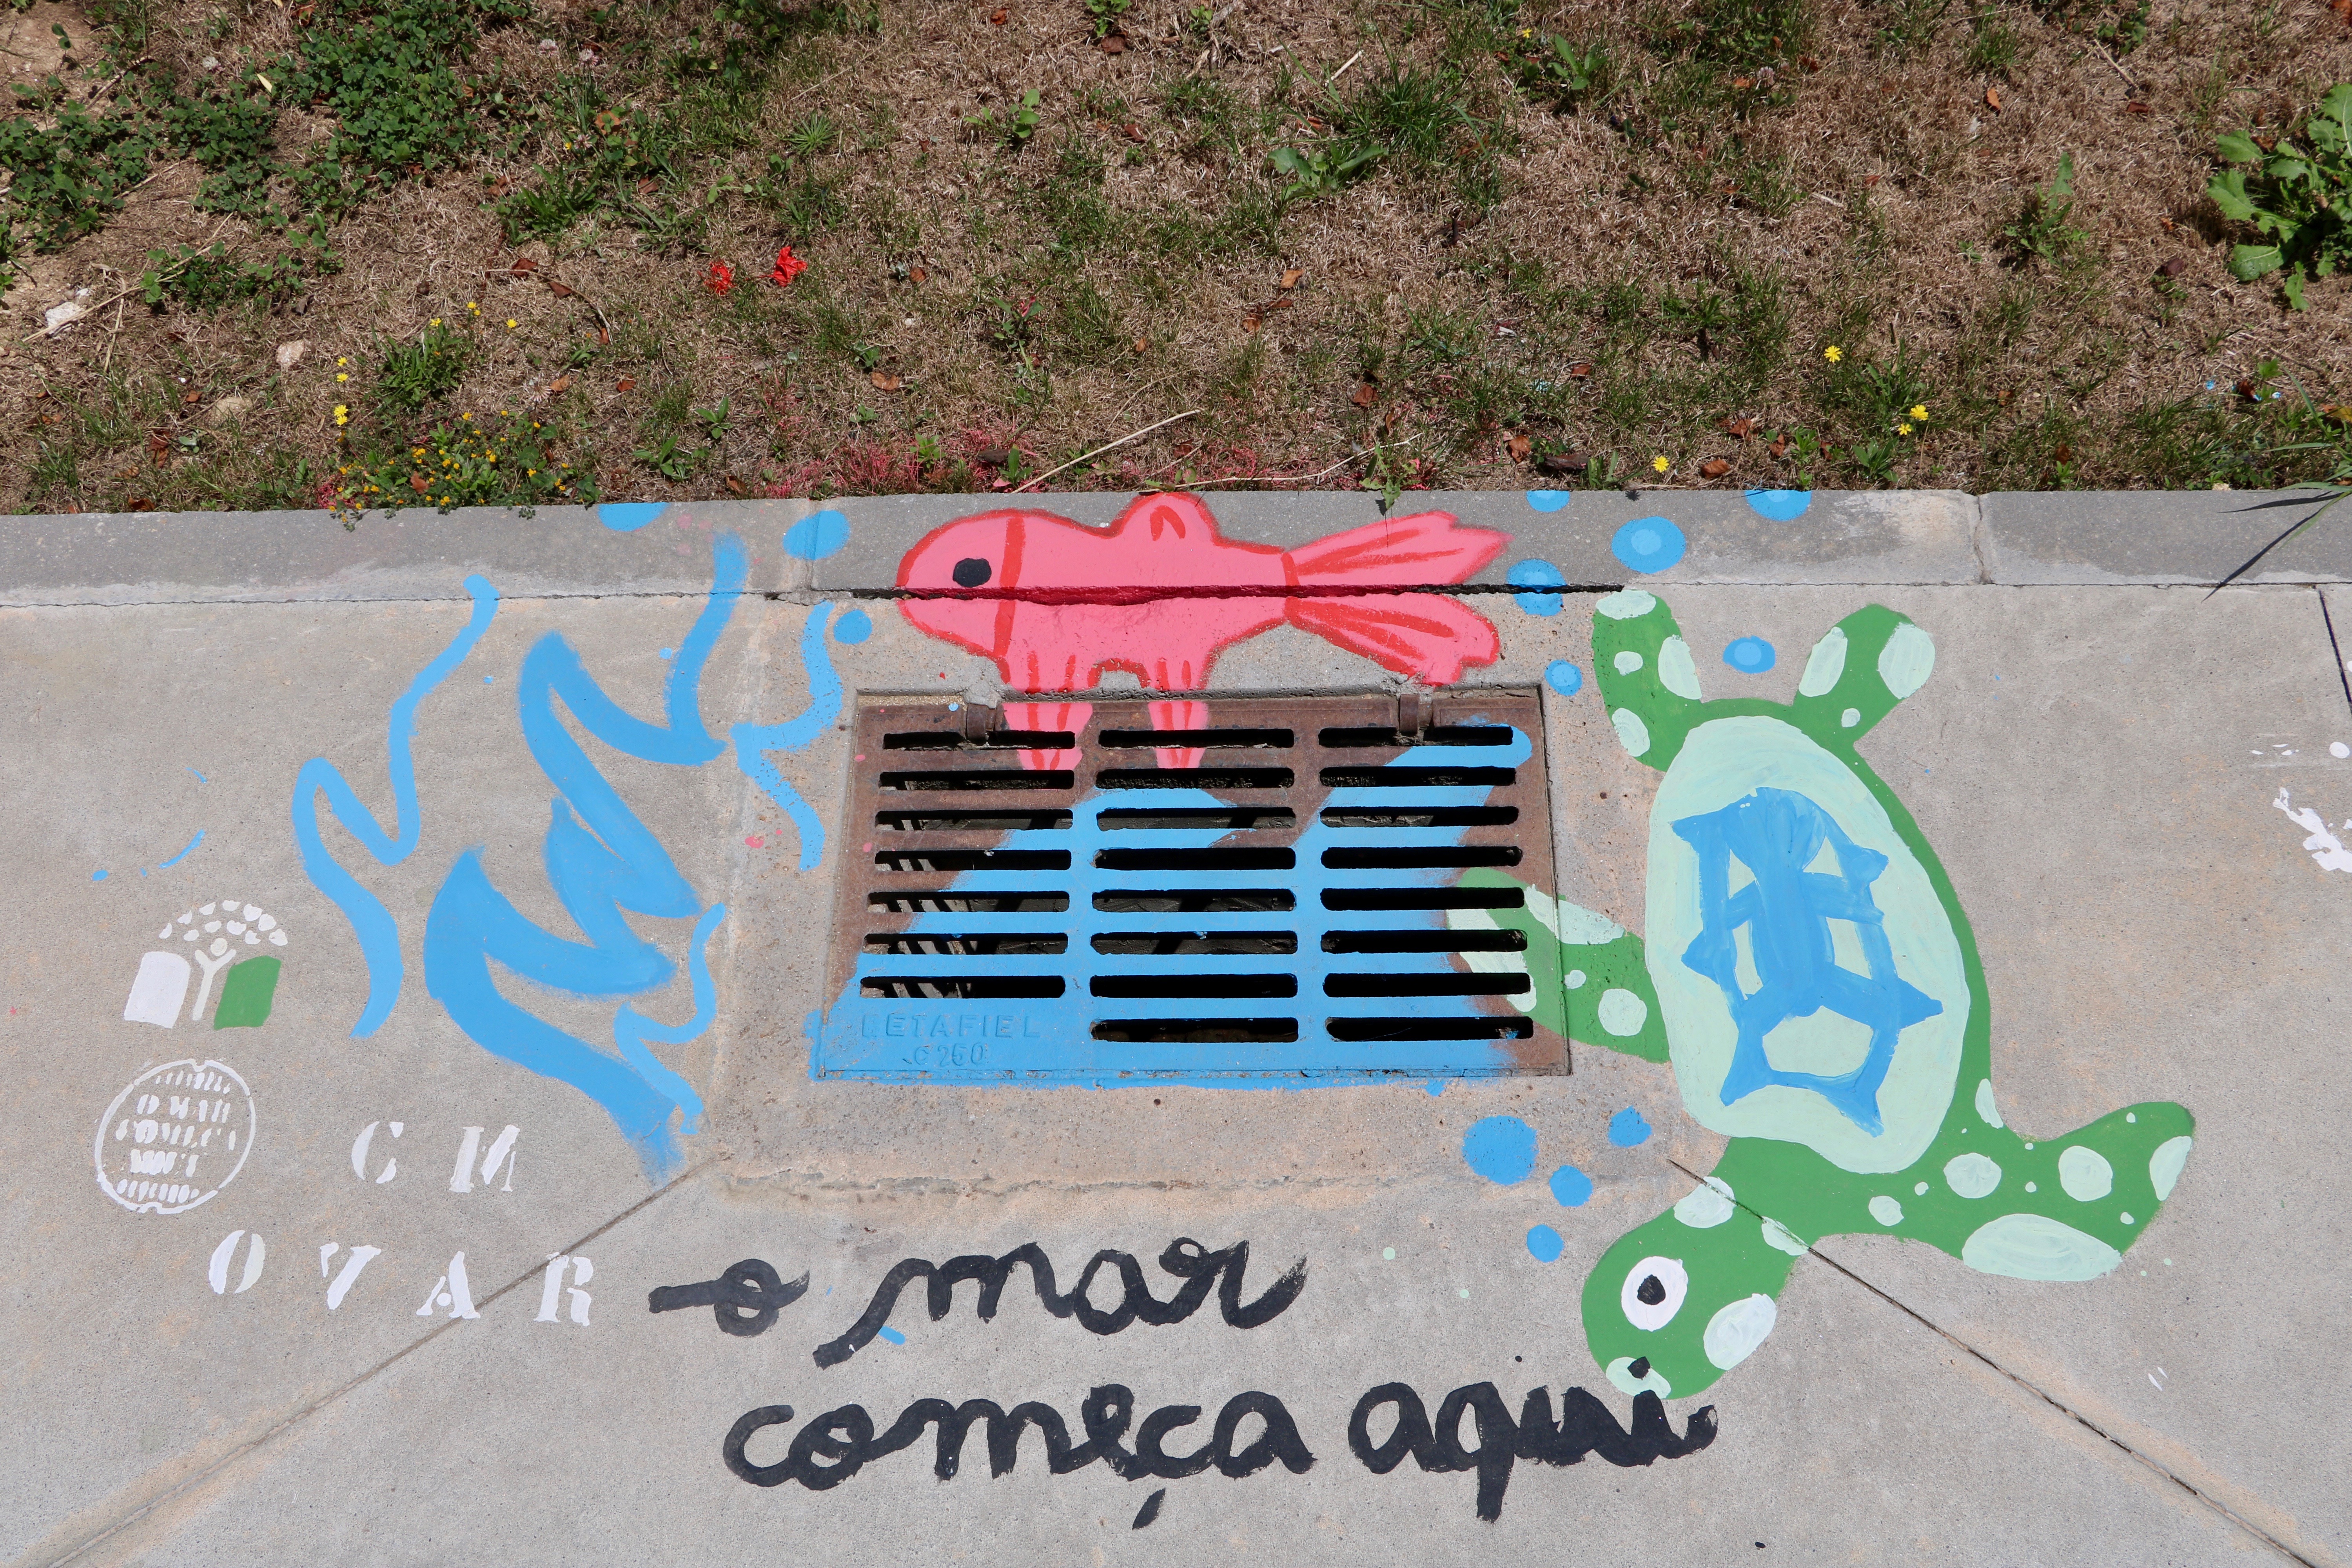 Escola Secundária  Júlio Dinis de Ovar<br />
A tartaruga  brincalhona desafia o peixe vermelho para uma corrida no mar Báltico.